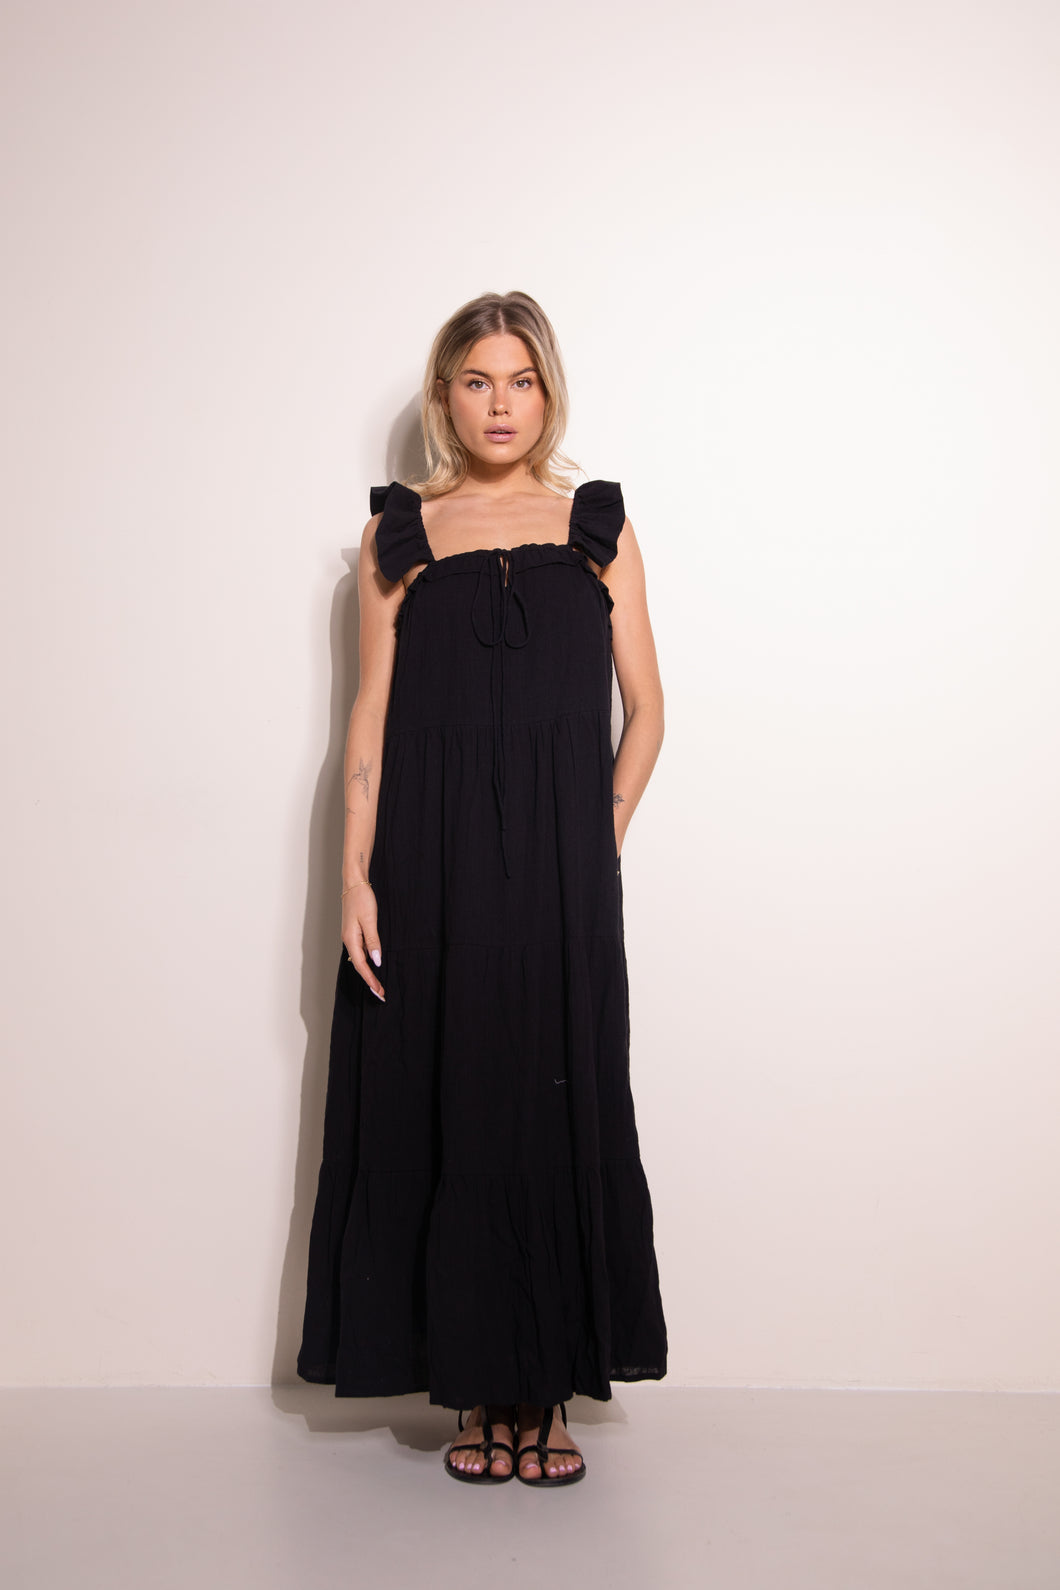 ELLA - Black dress